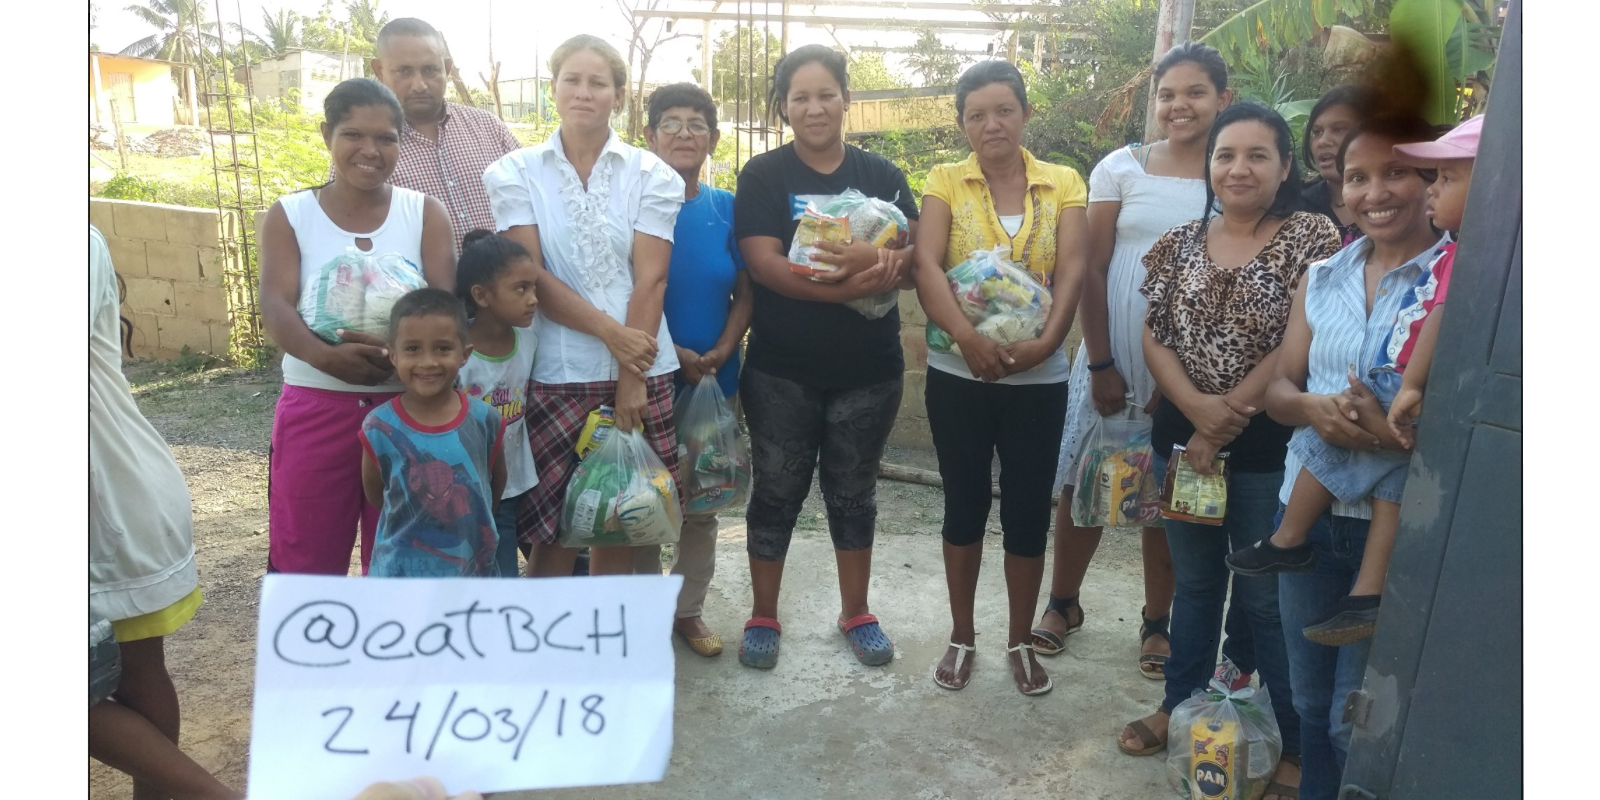 Eatbch, organización sin fines de lucro venezolana, celebra su primer aniversario en medio de una hiperinflación